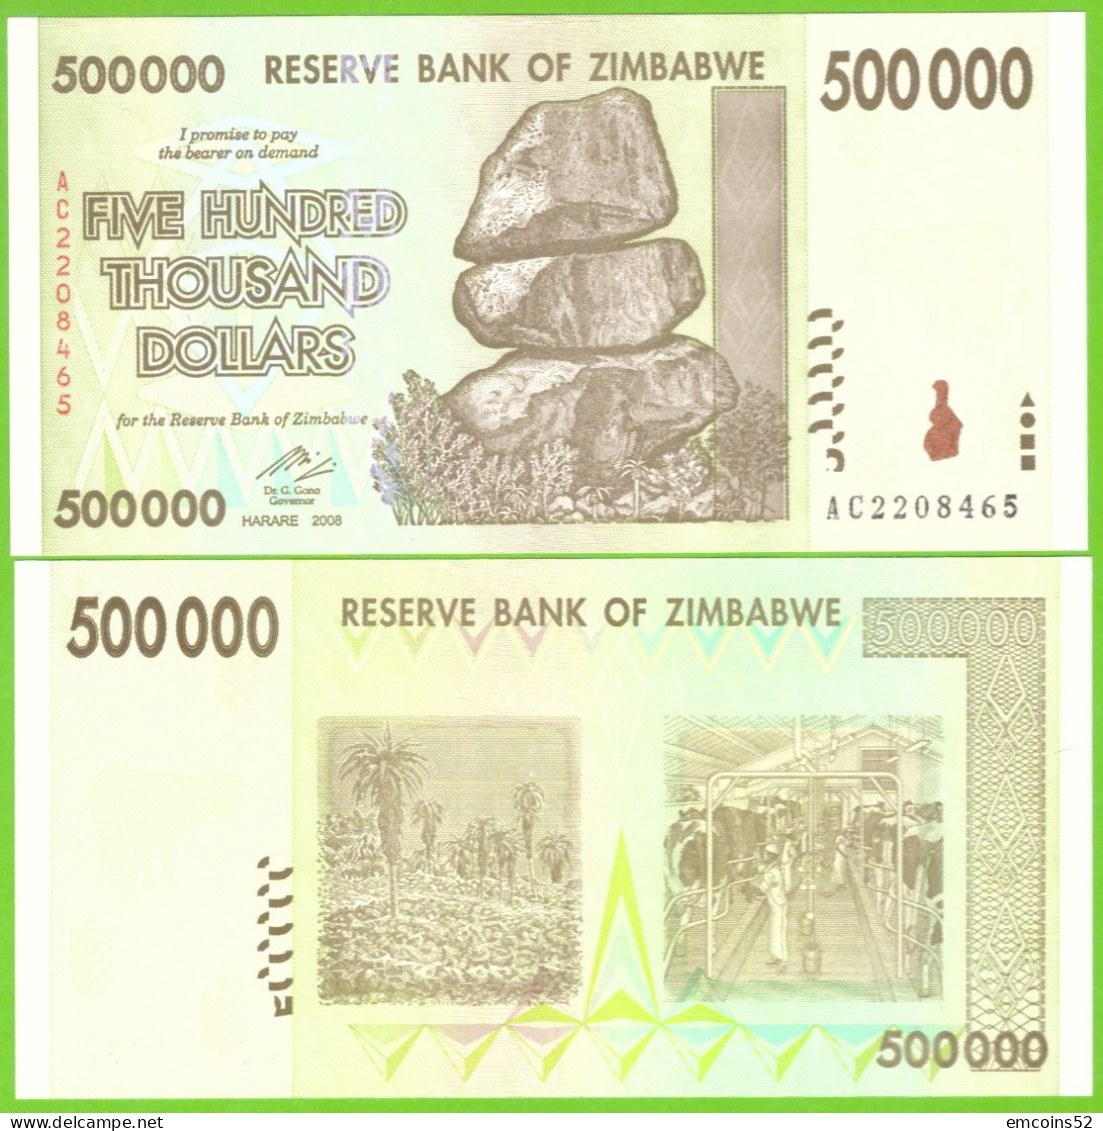 ZIMBABWE 500000 DOLLARS 2008  P-76 UNC - Zimbabwe